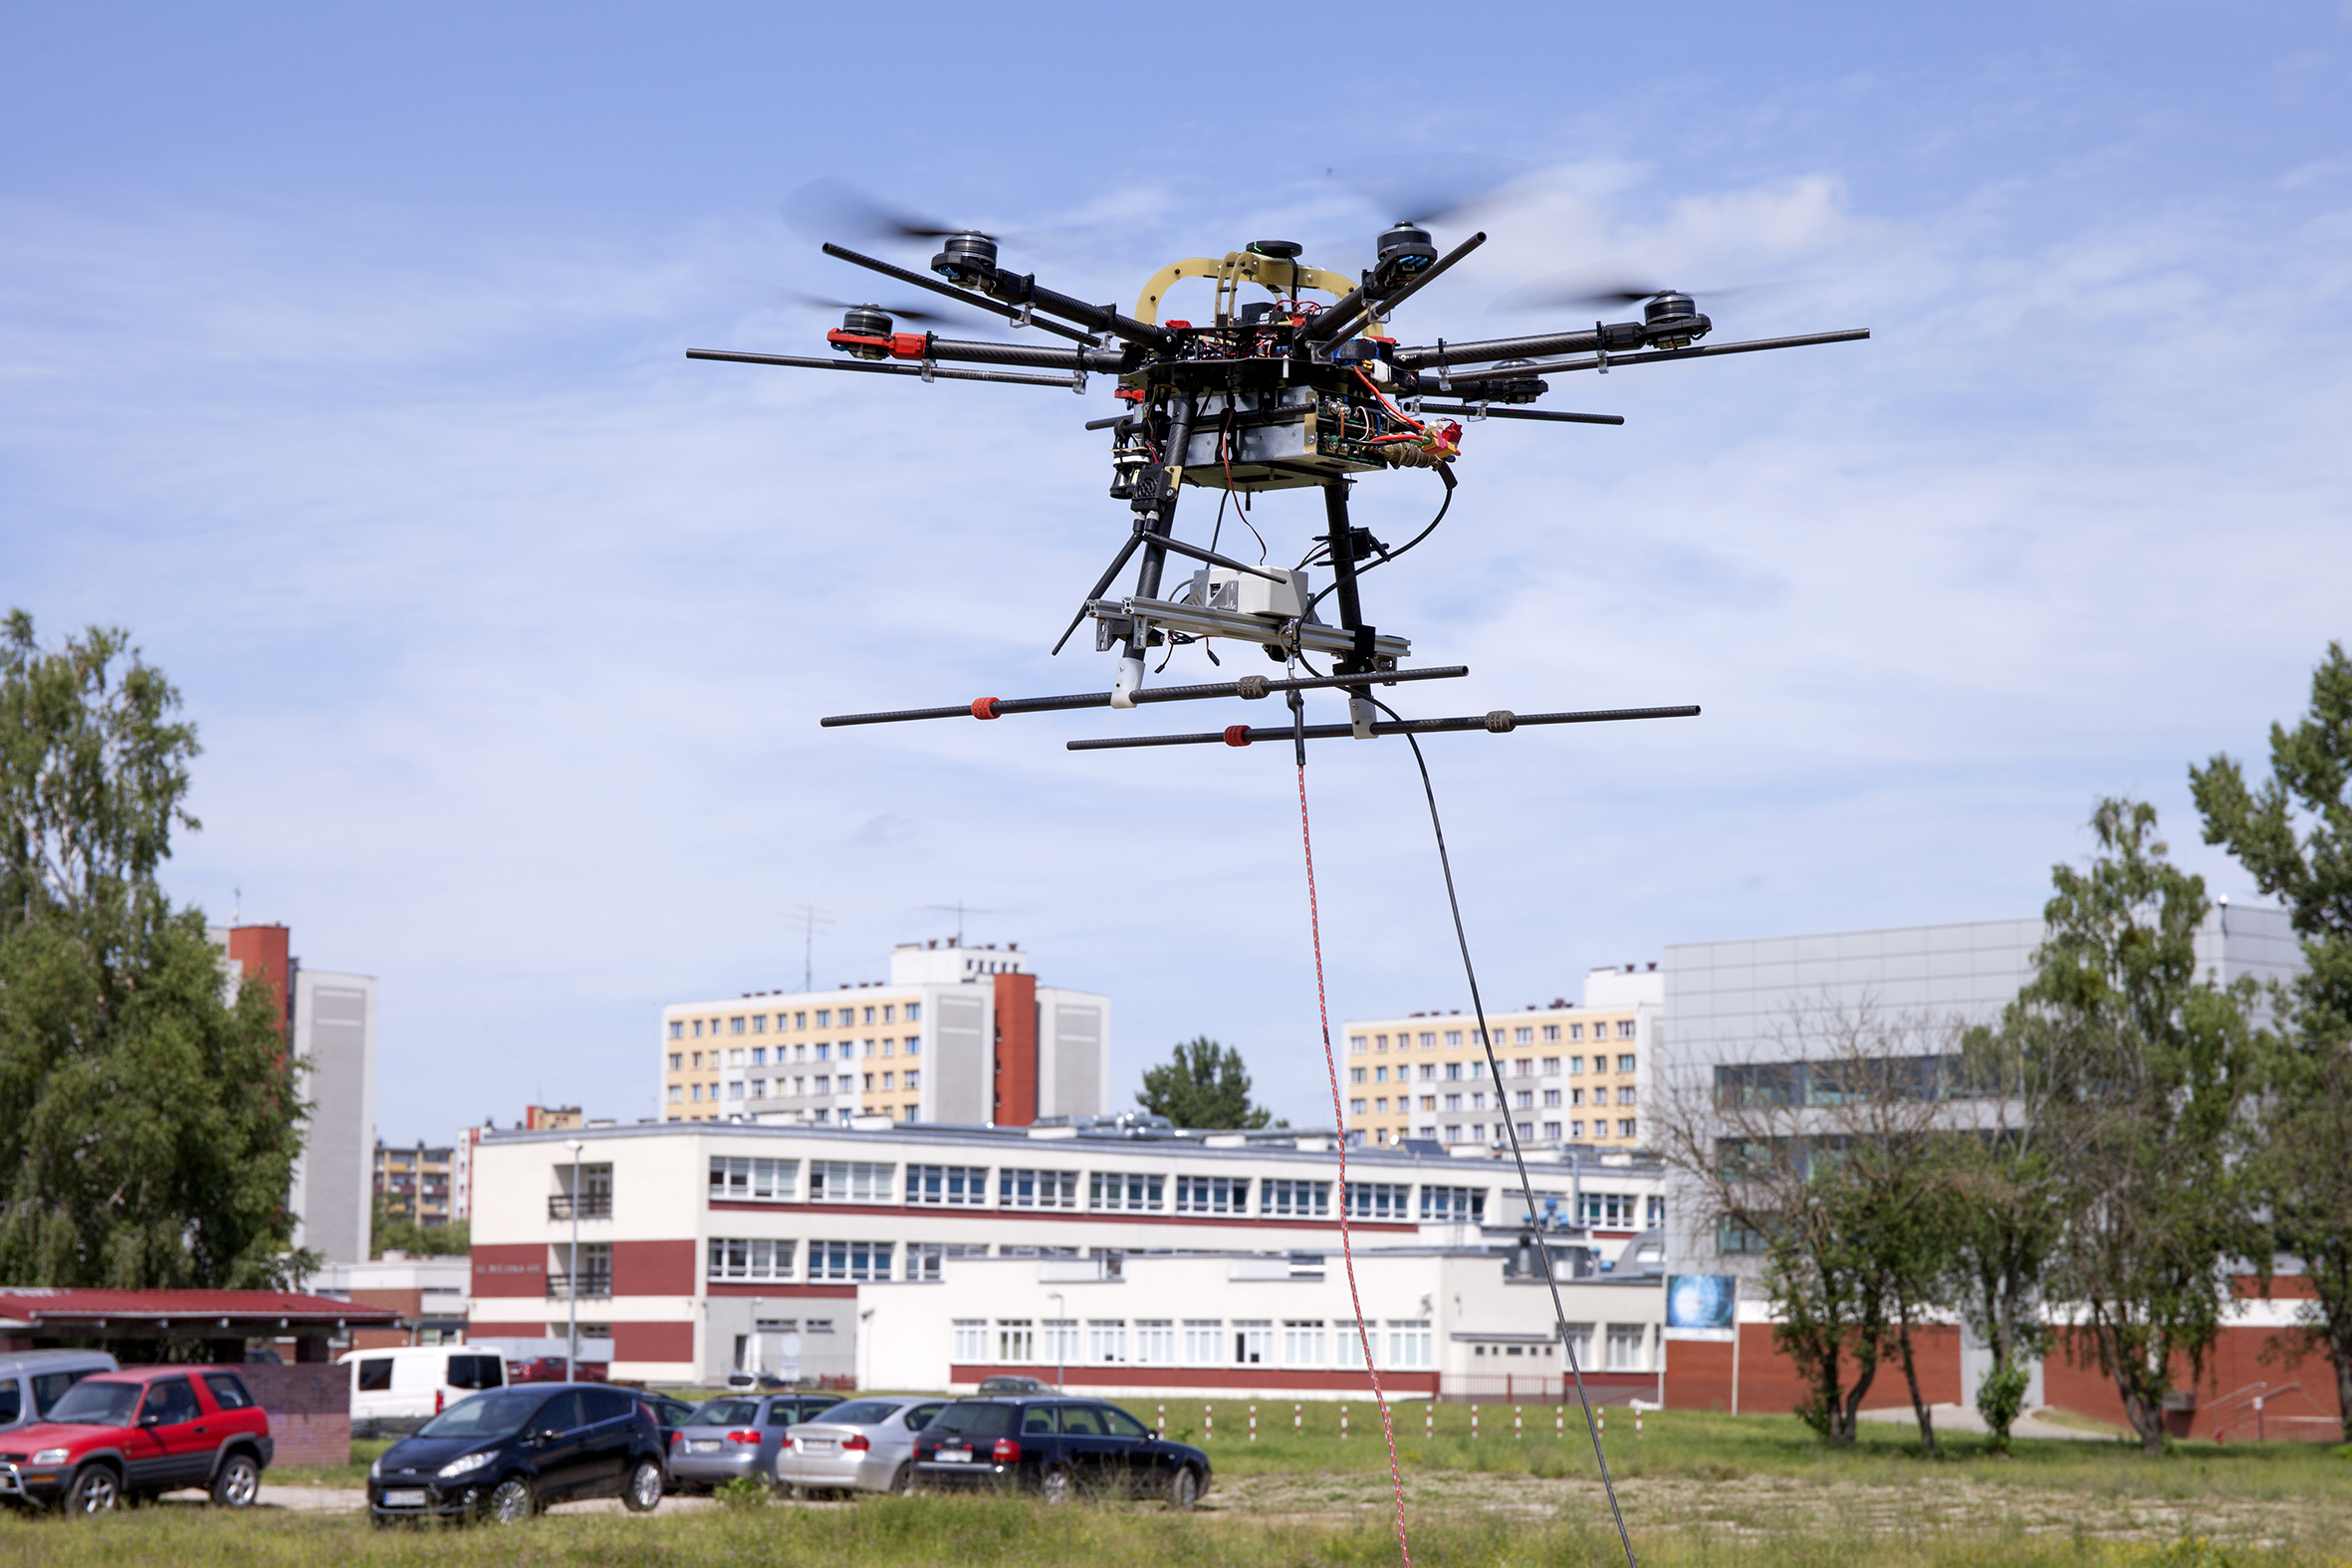 Testy elementów systemu AVAL przeprowadzone na Politechnice Białostockiej. W centrum zdjęcia widoczny dron wznoszący się nad łąką i parkingiem w pobliżu kampusu uczelni